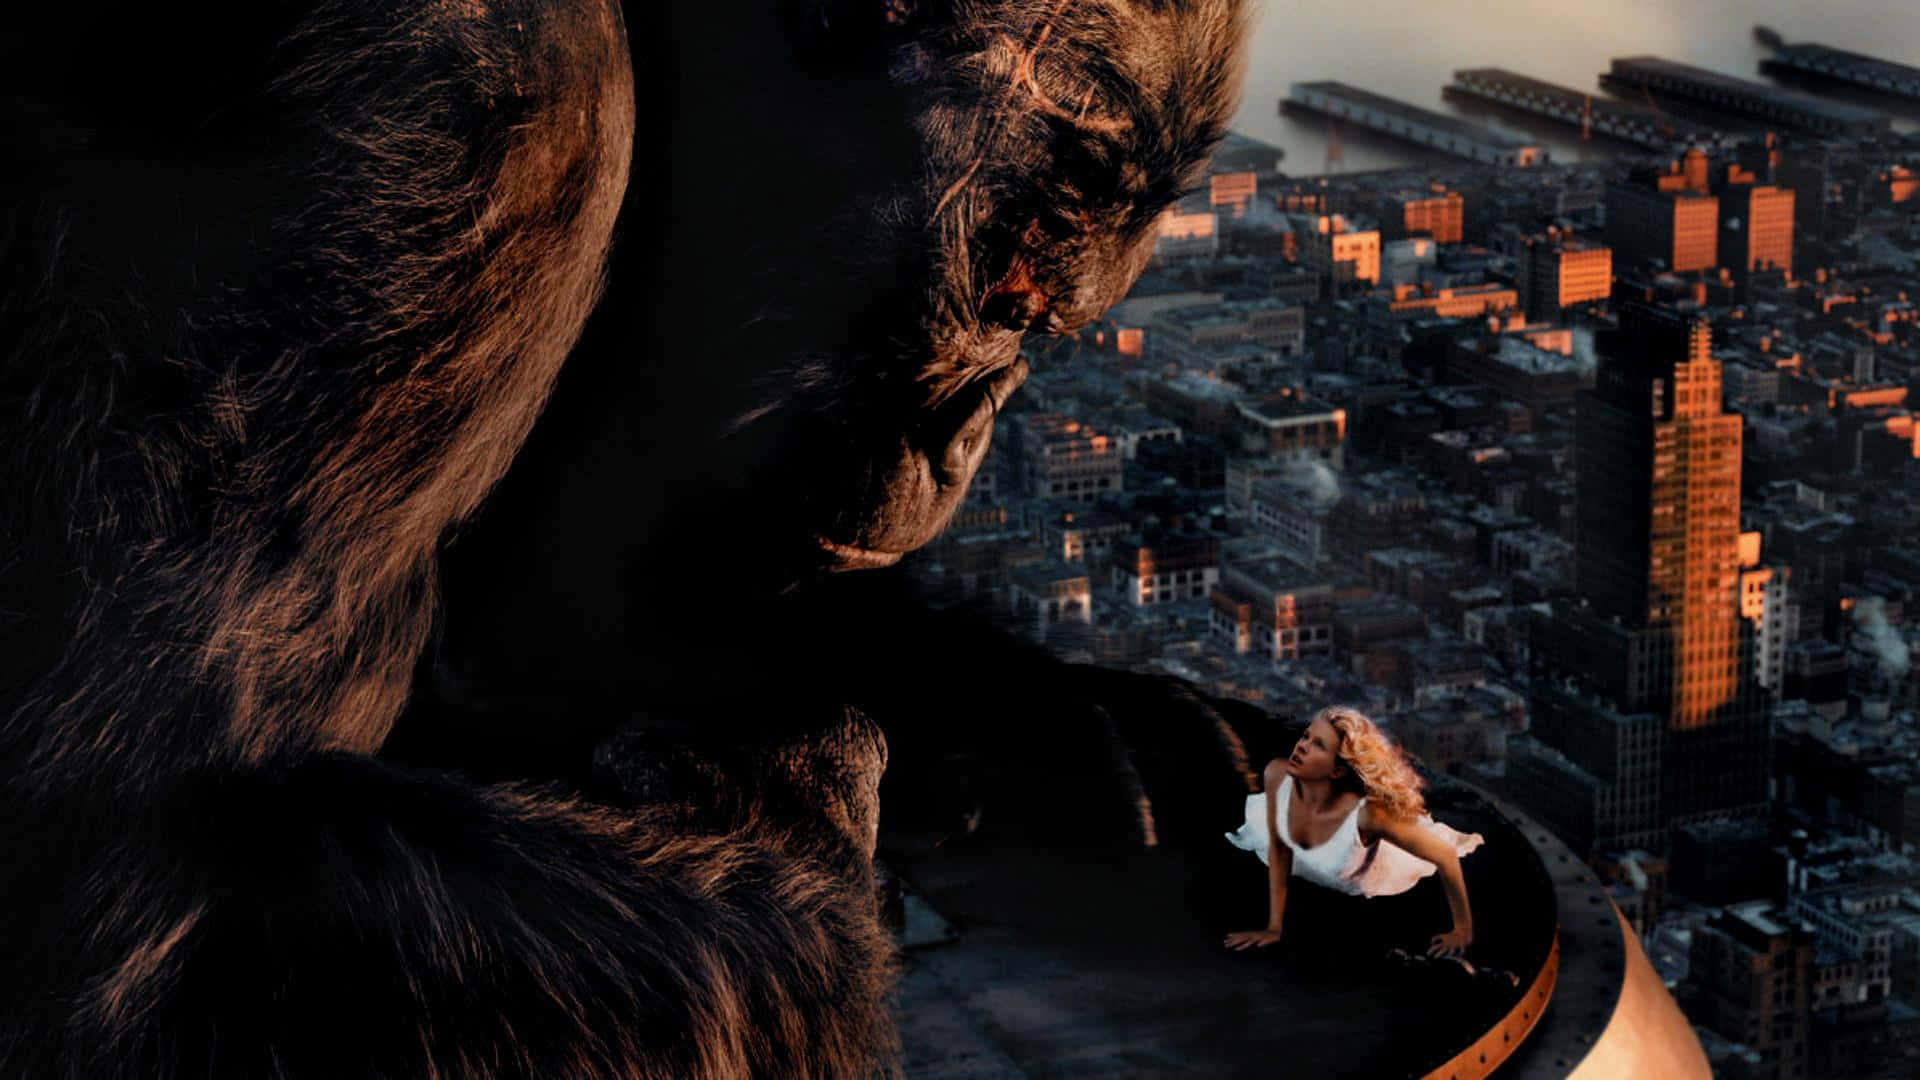 Imagenun Gigantesco King Kong En Lo Alto Del Rascacielos Más Alto De Nueva York.